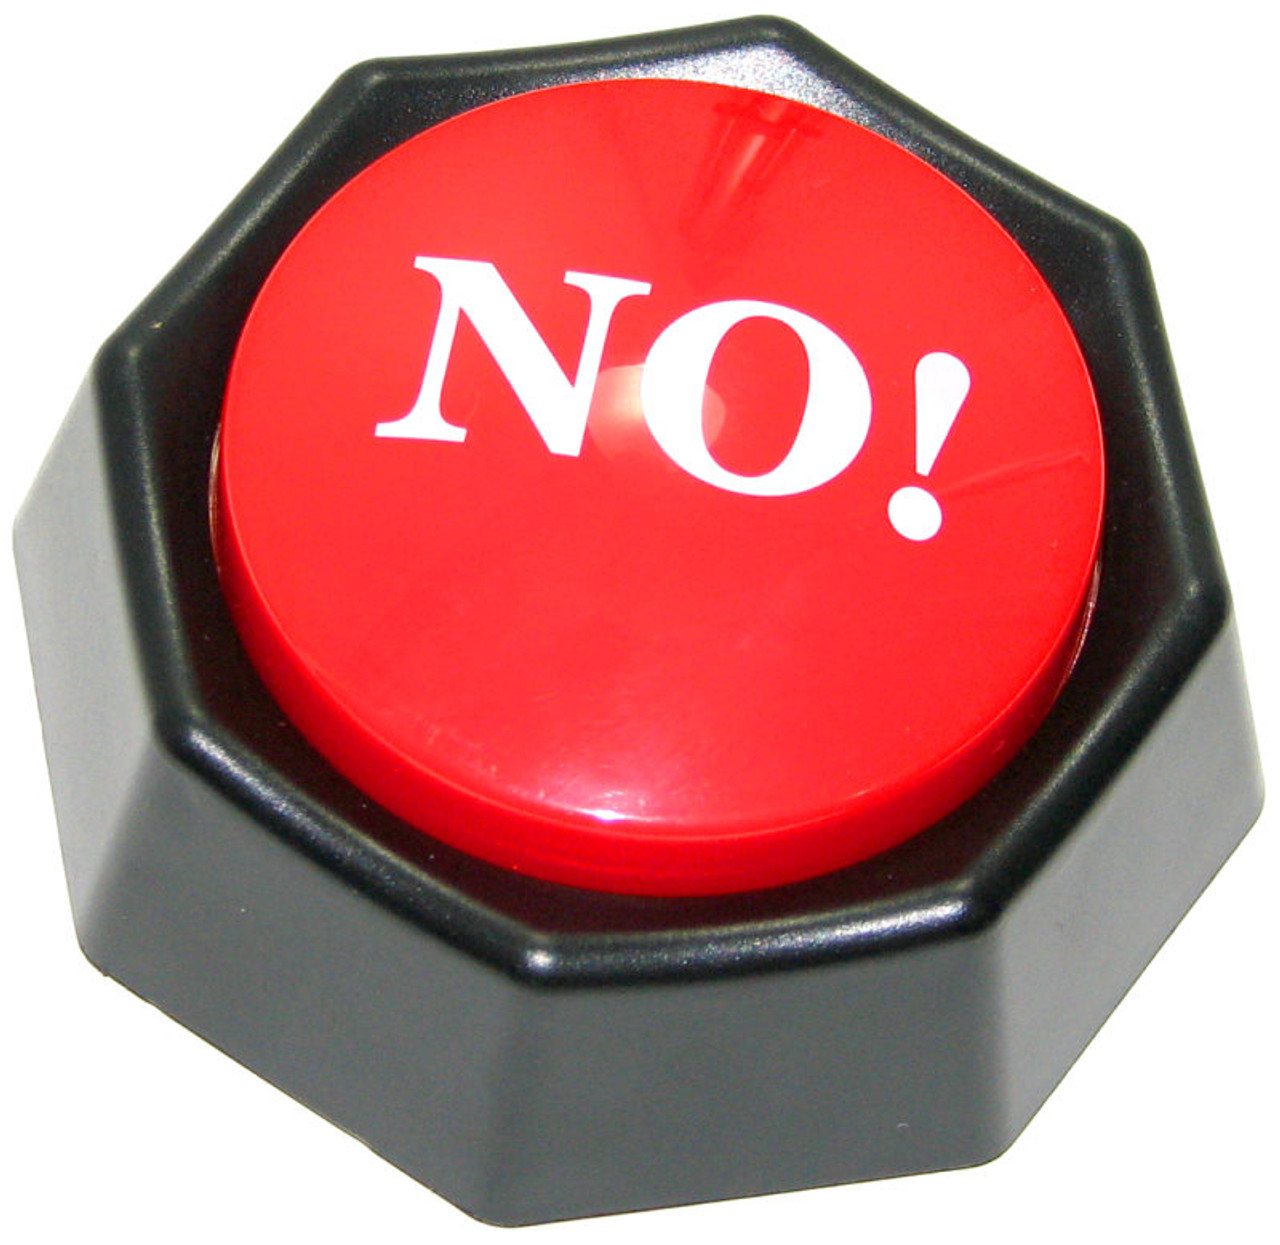 The No Button